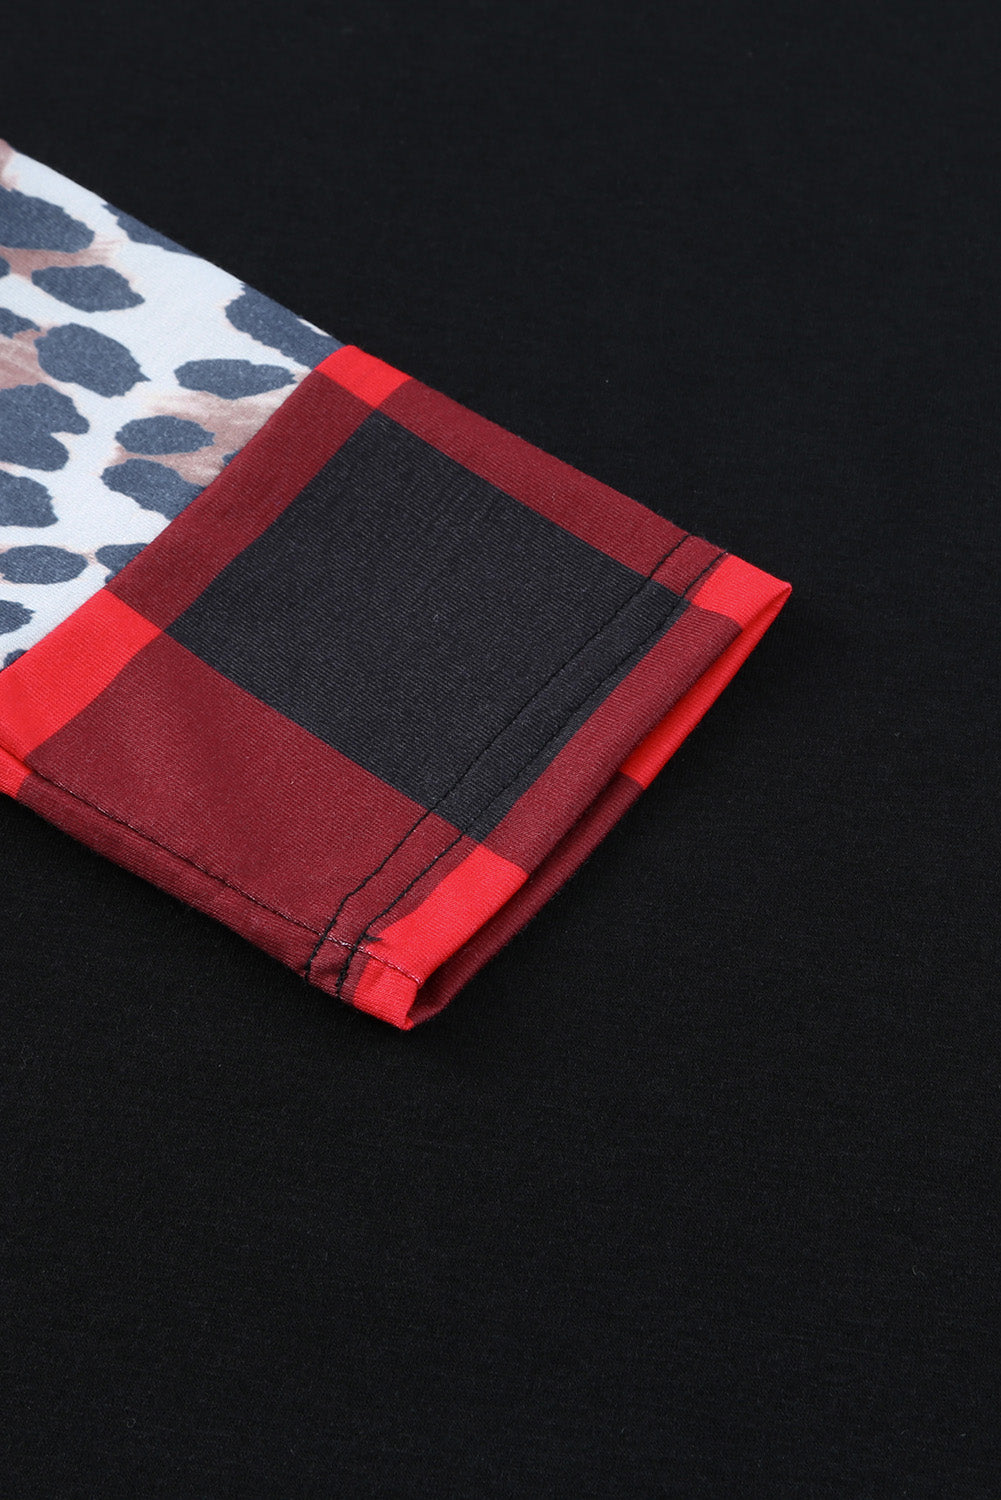 Black Off Shoulder Plaid&Leopard Print Long Sleeve Top Long Sleeve Tops JT's Designer Fashion